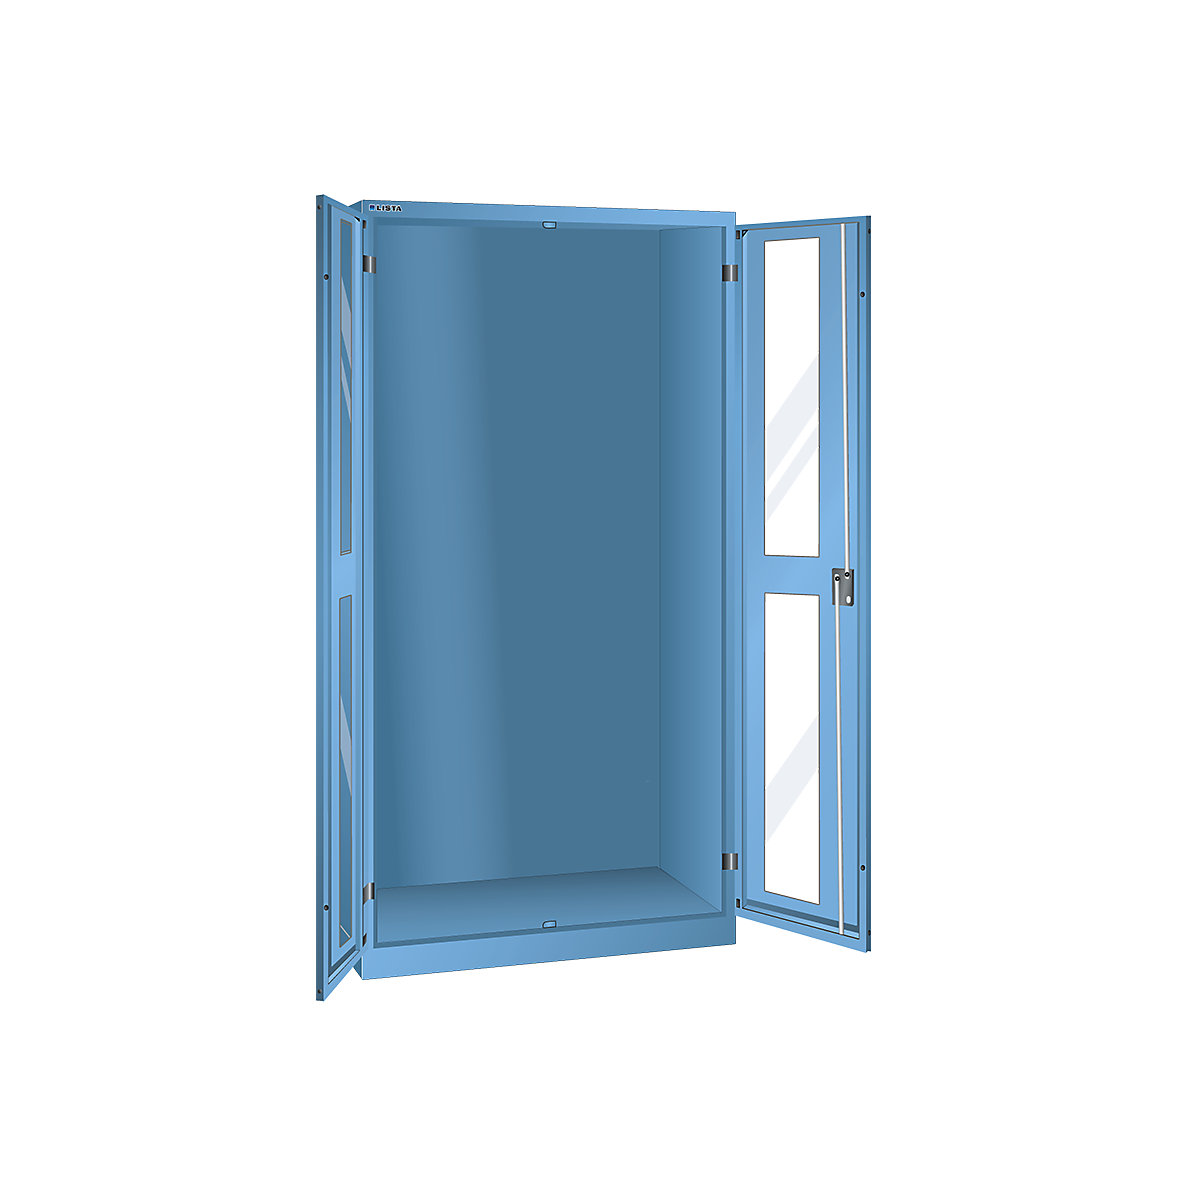 Armoire vitrée, h x l x p 1950 x 1000 x 580 mm – LISTA, armoire vide, bleu clair-1